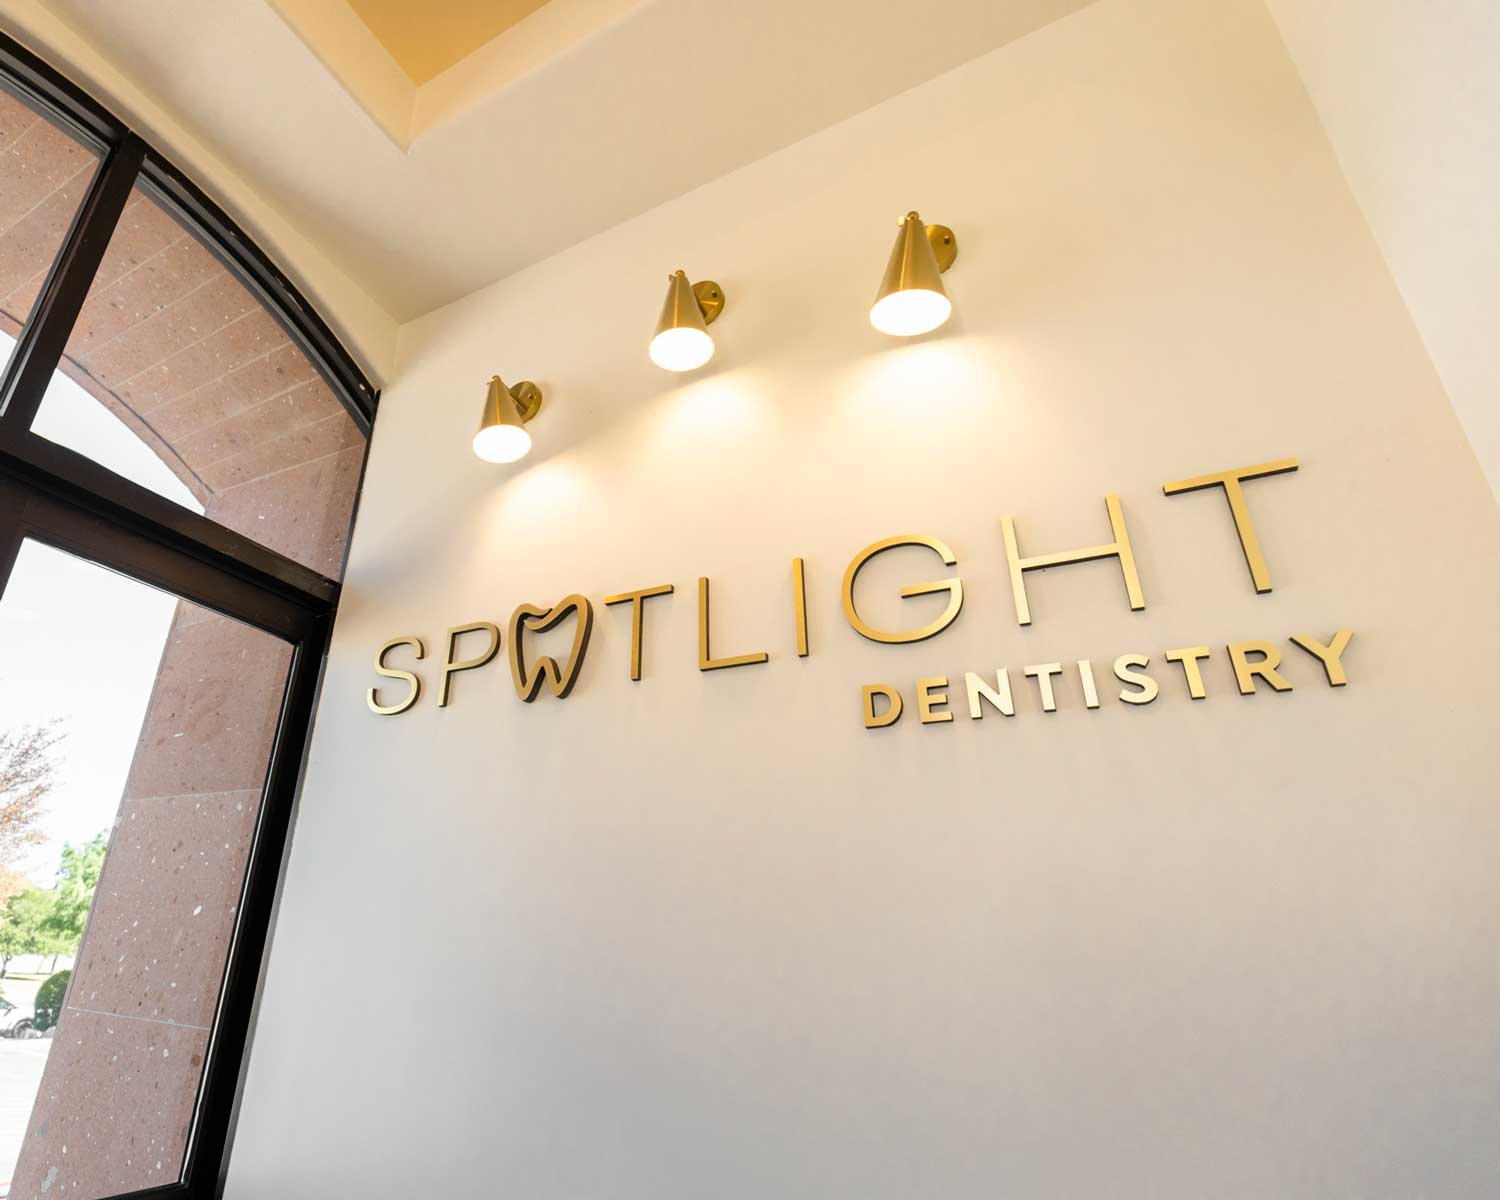 Spotlight Dentistry sign